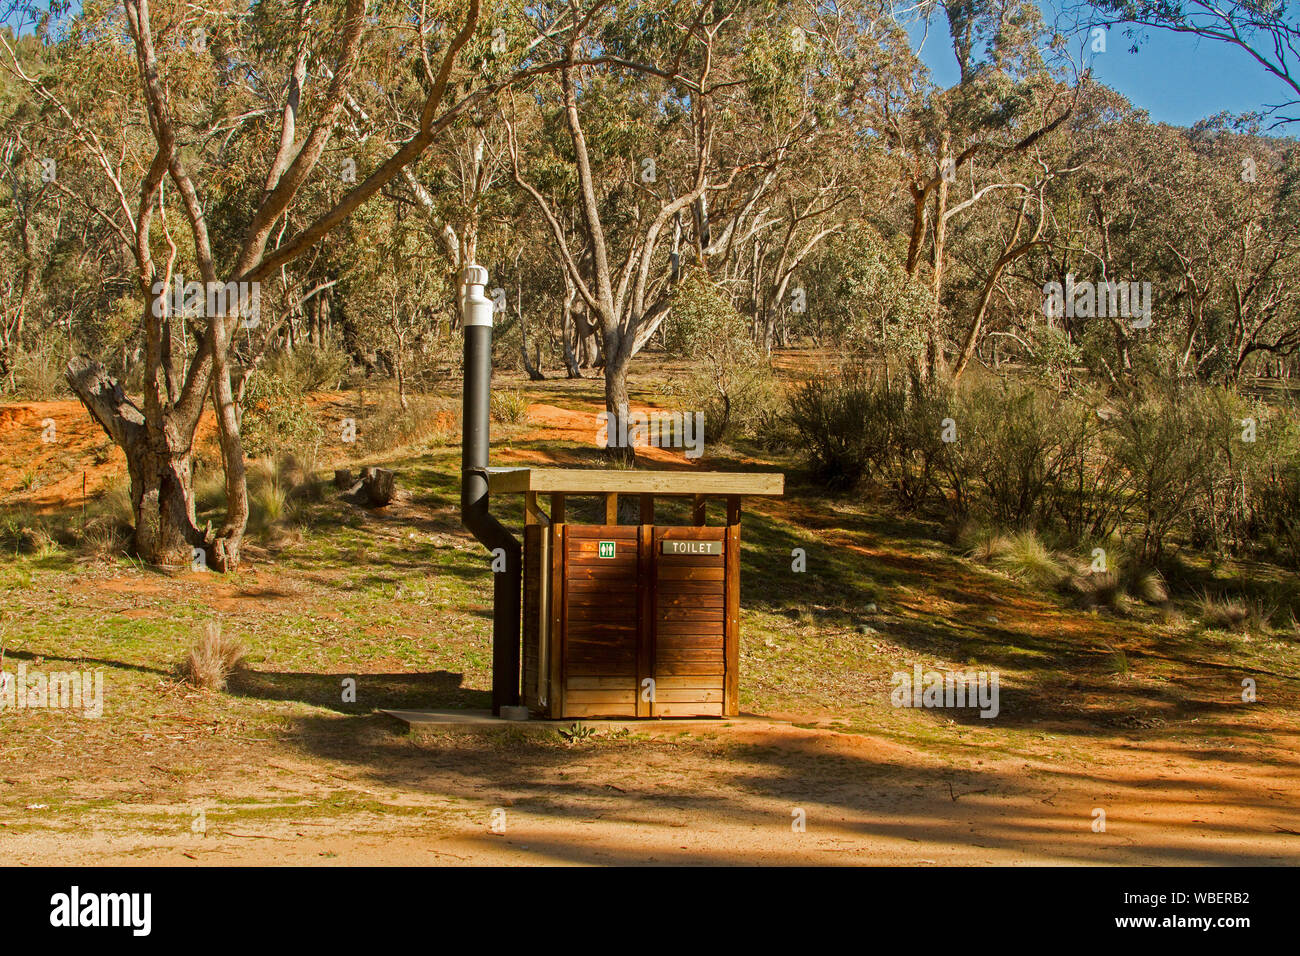 Edificio de madera, Bush wc, dunny, fosa loo, wc larga caída, entre bosques de grandes árboles de eucaliptos en la zona de picnic rural en Nueva Gales del Sur (Australia) Foto de stock